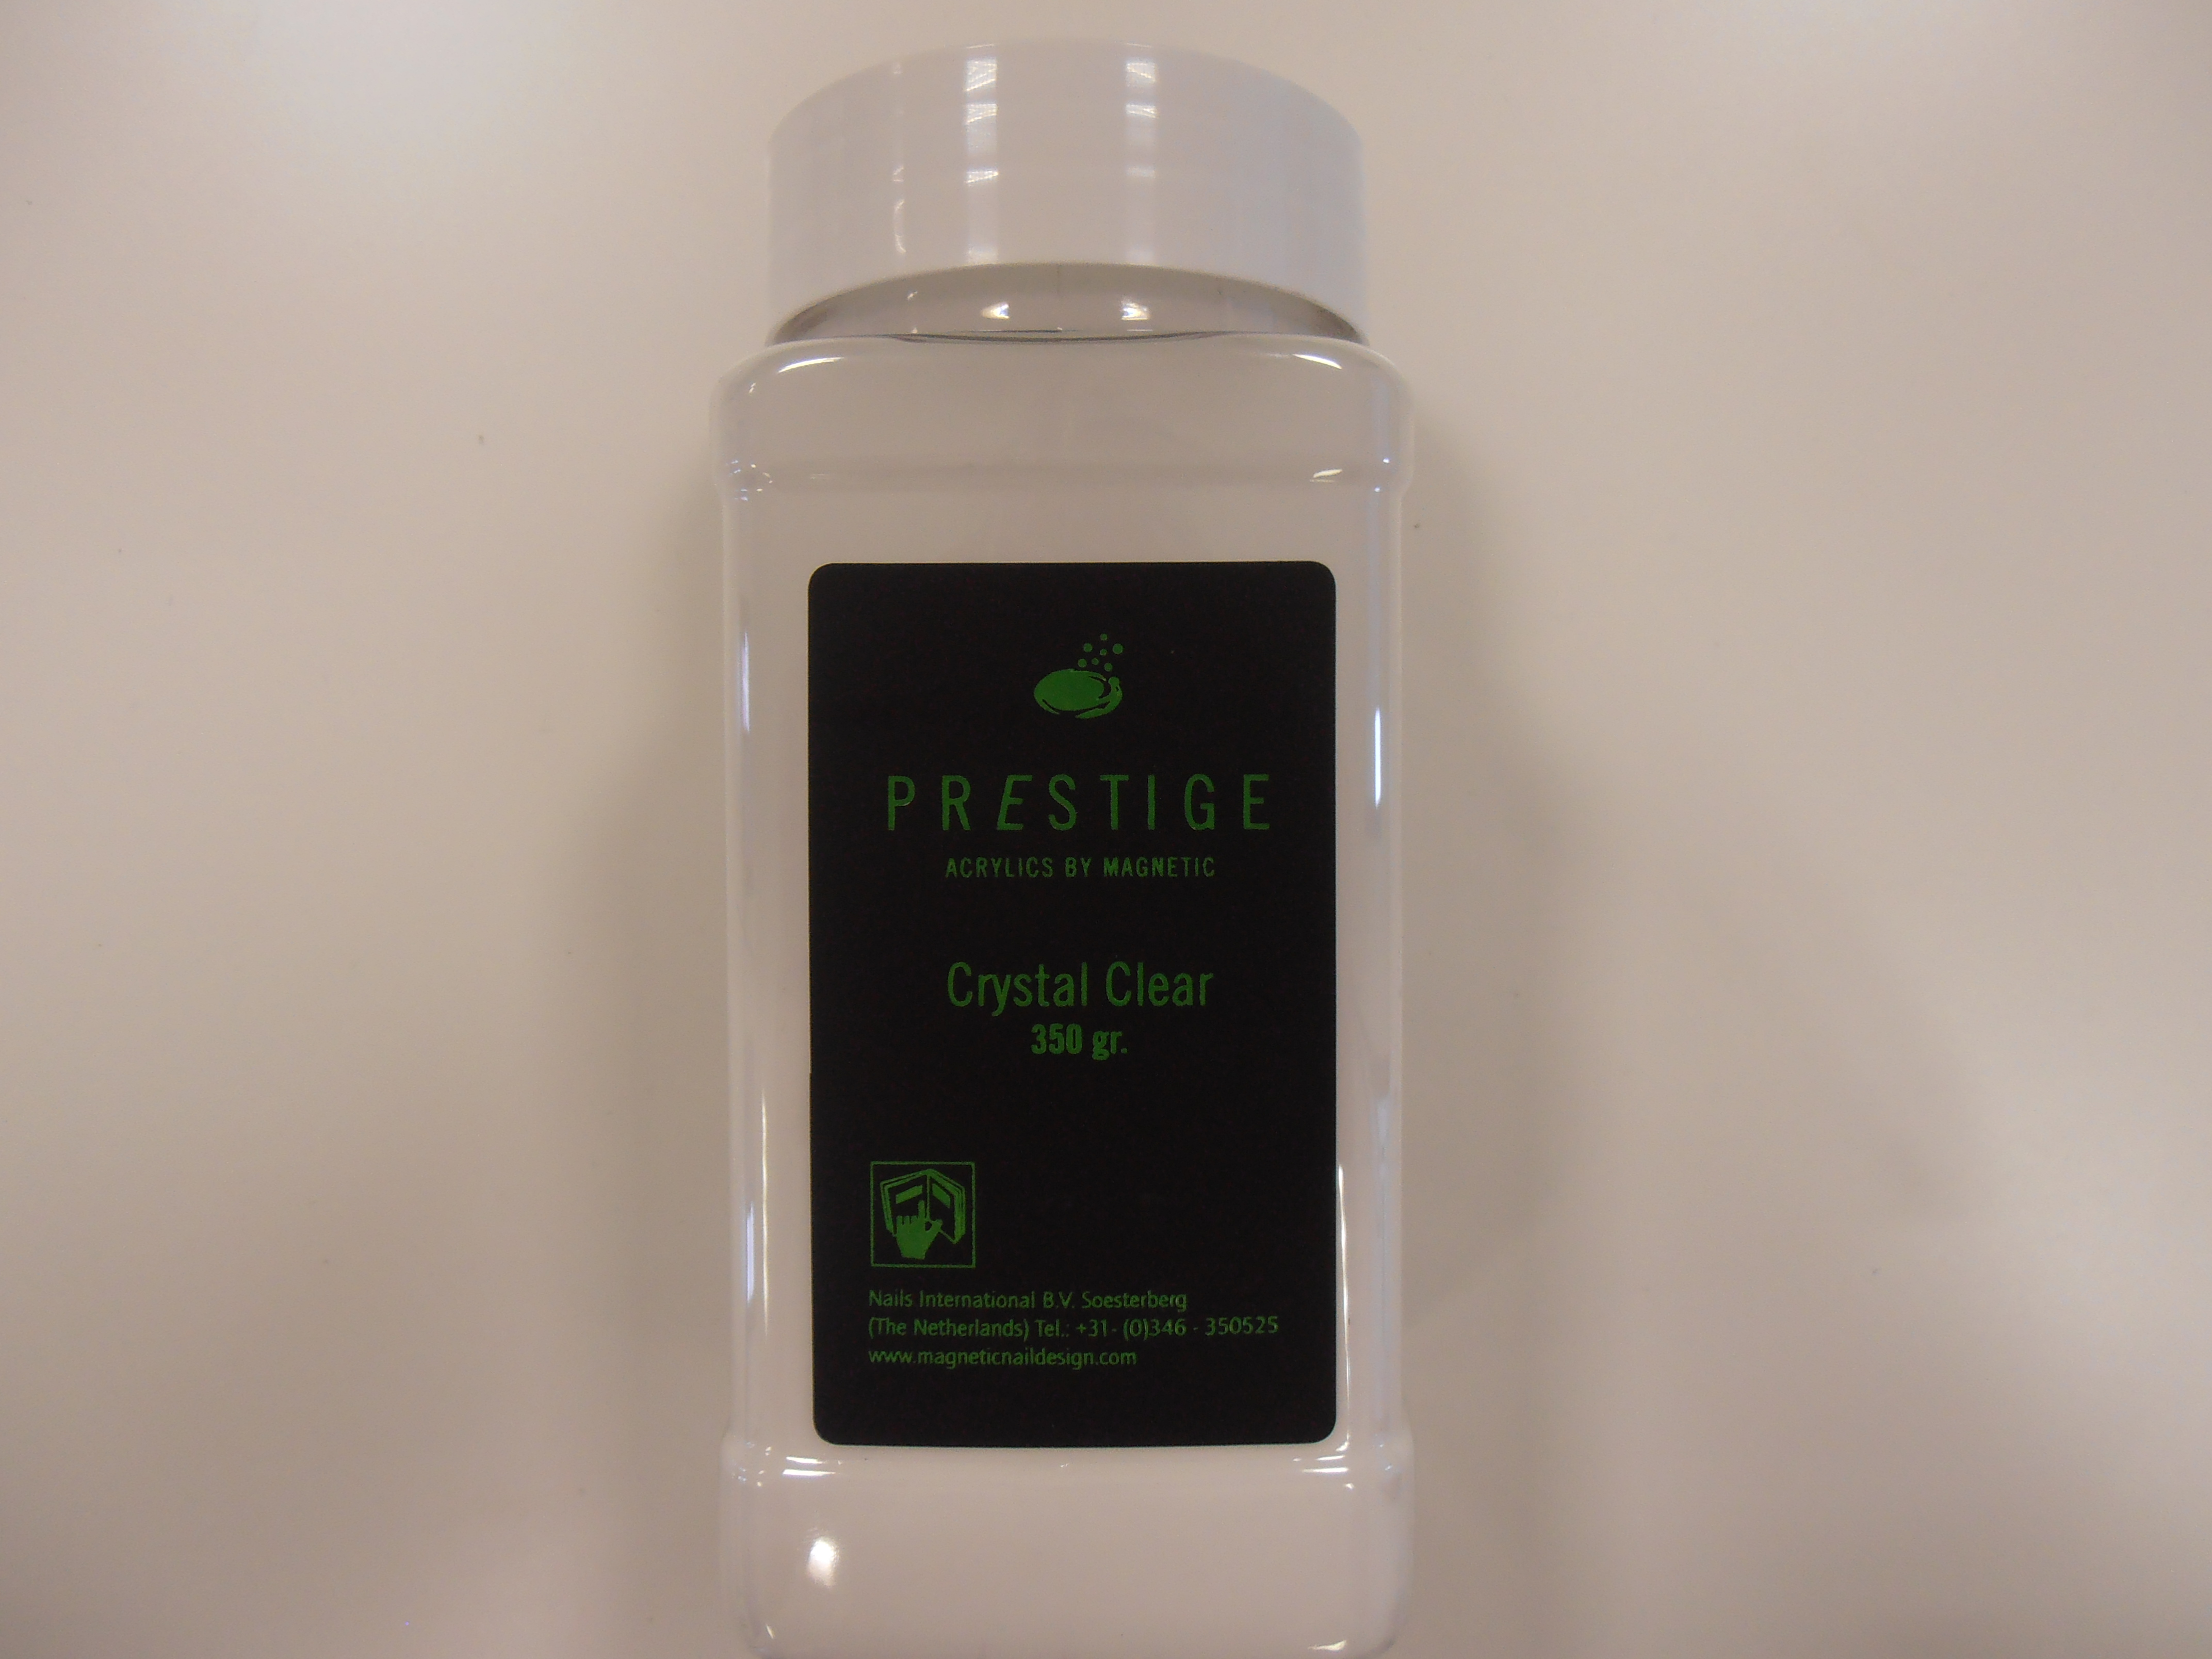 Prestige Powder Crystal Clear 350 gr